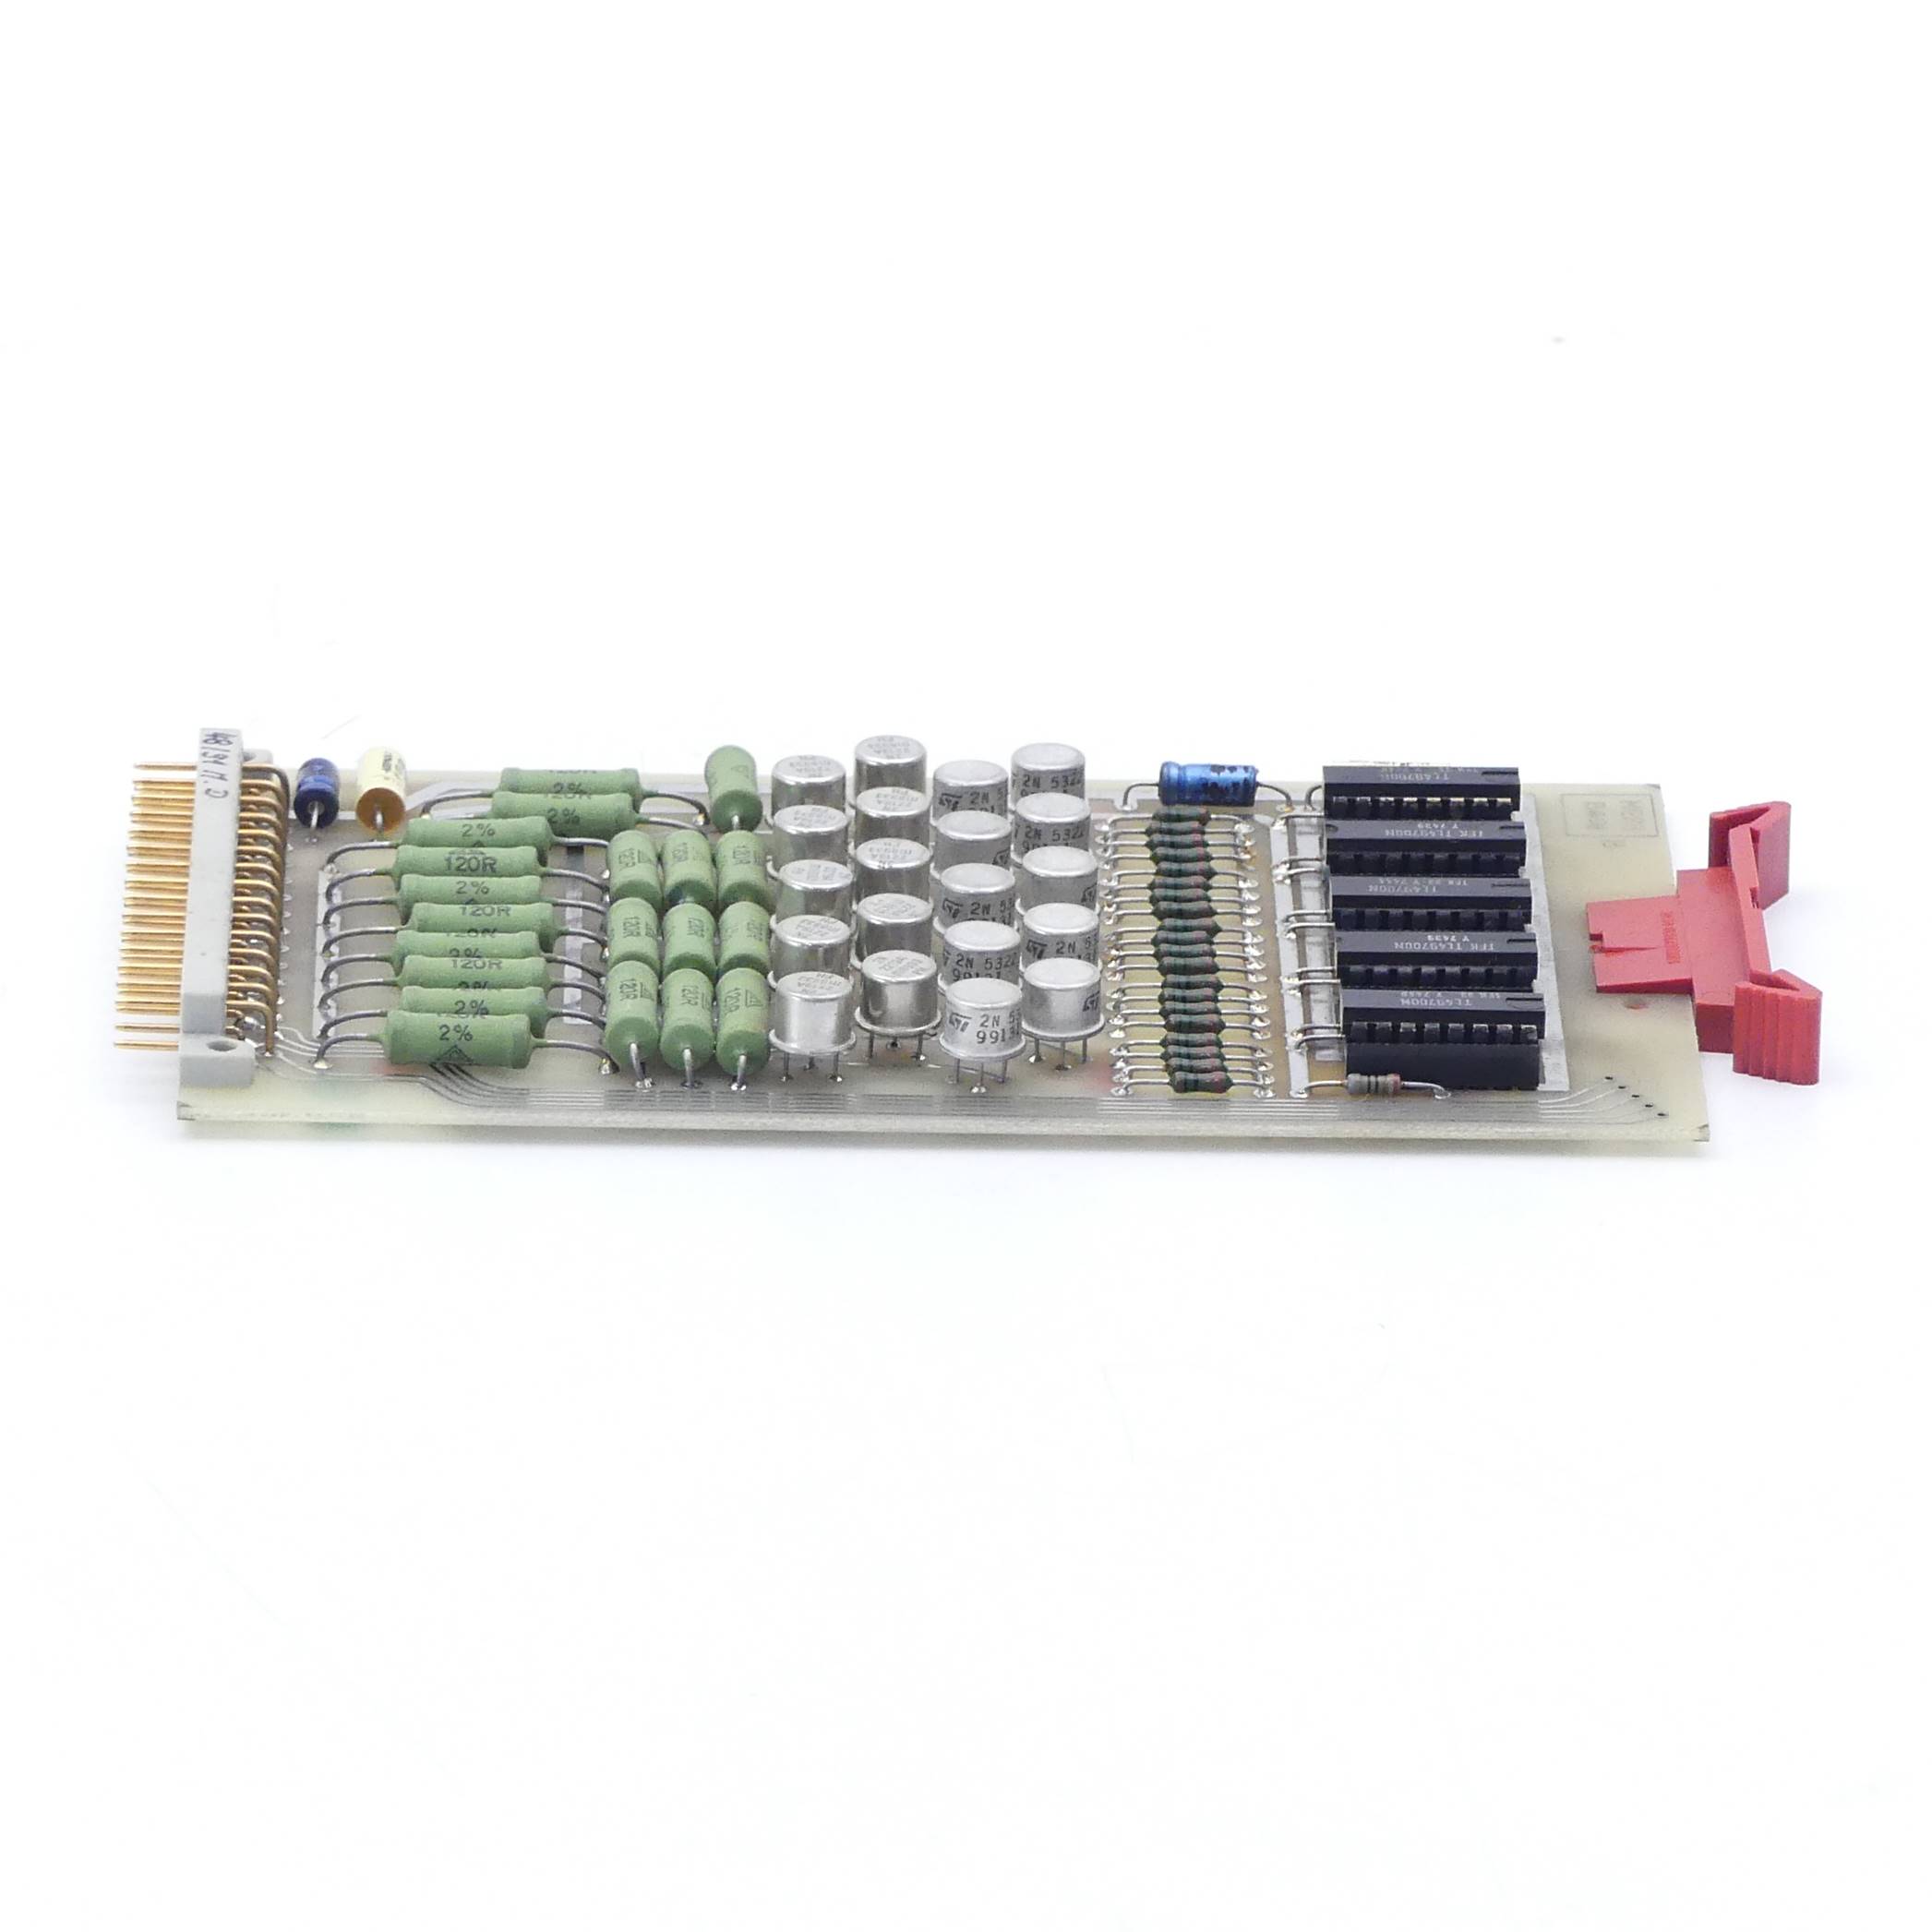 circuit board QMB-B658/2 